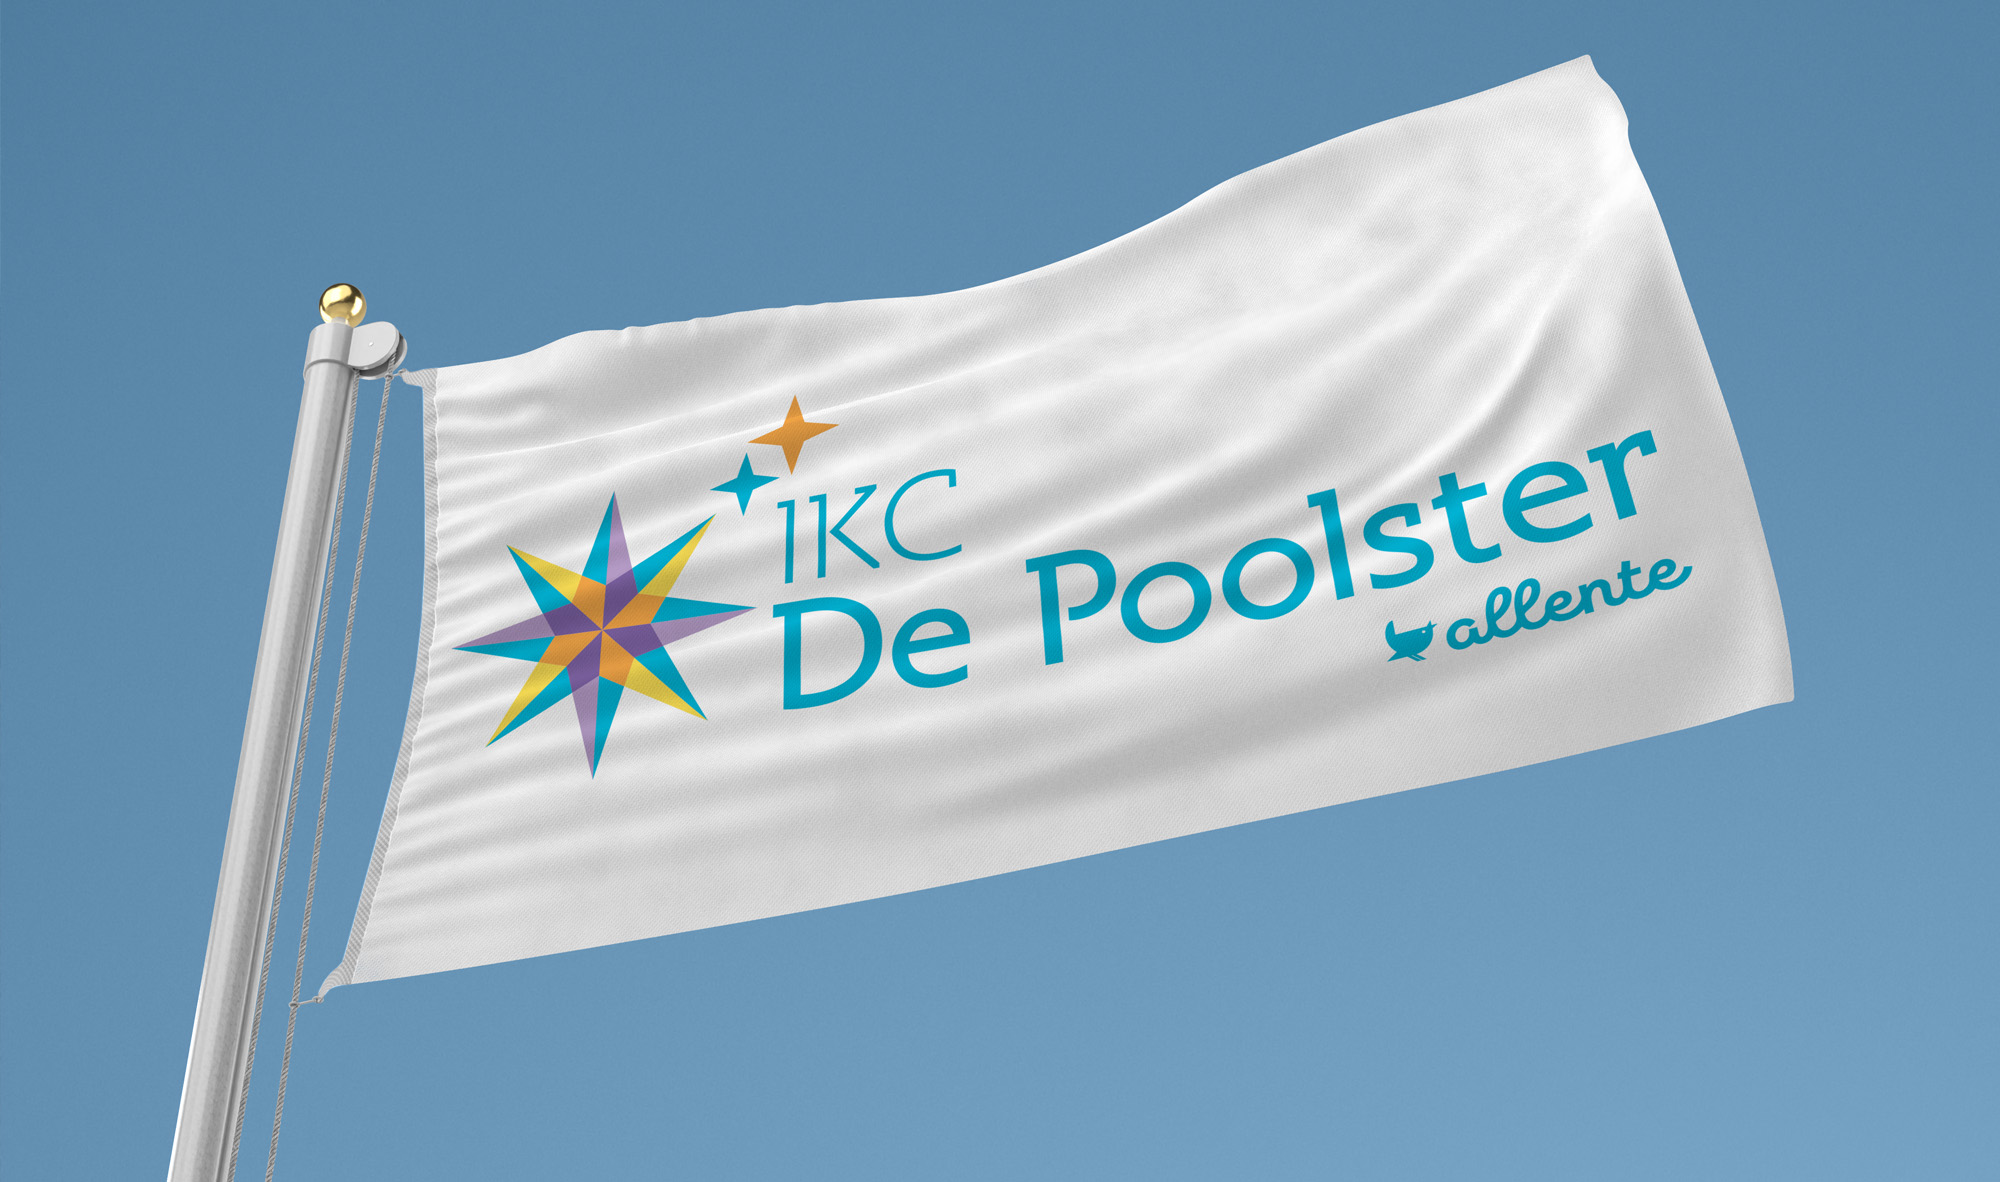 IKC de Poolster